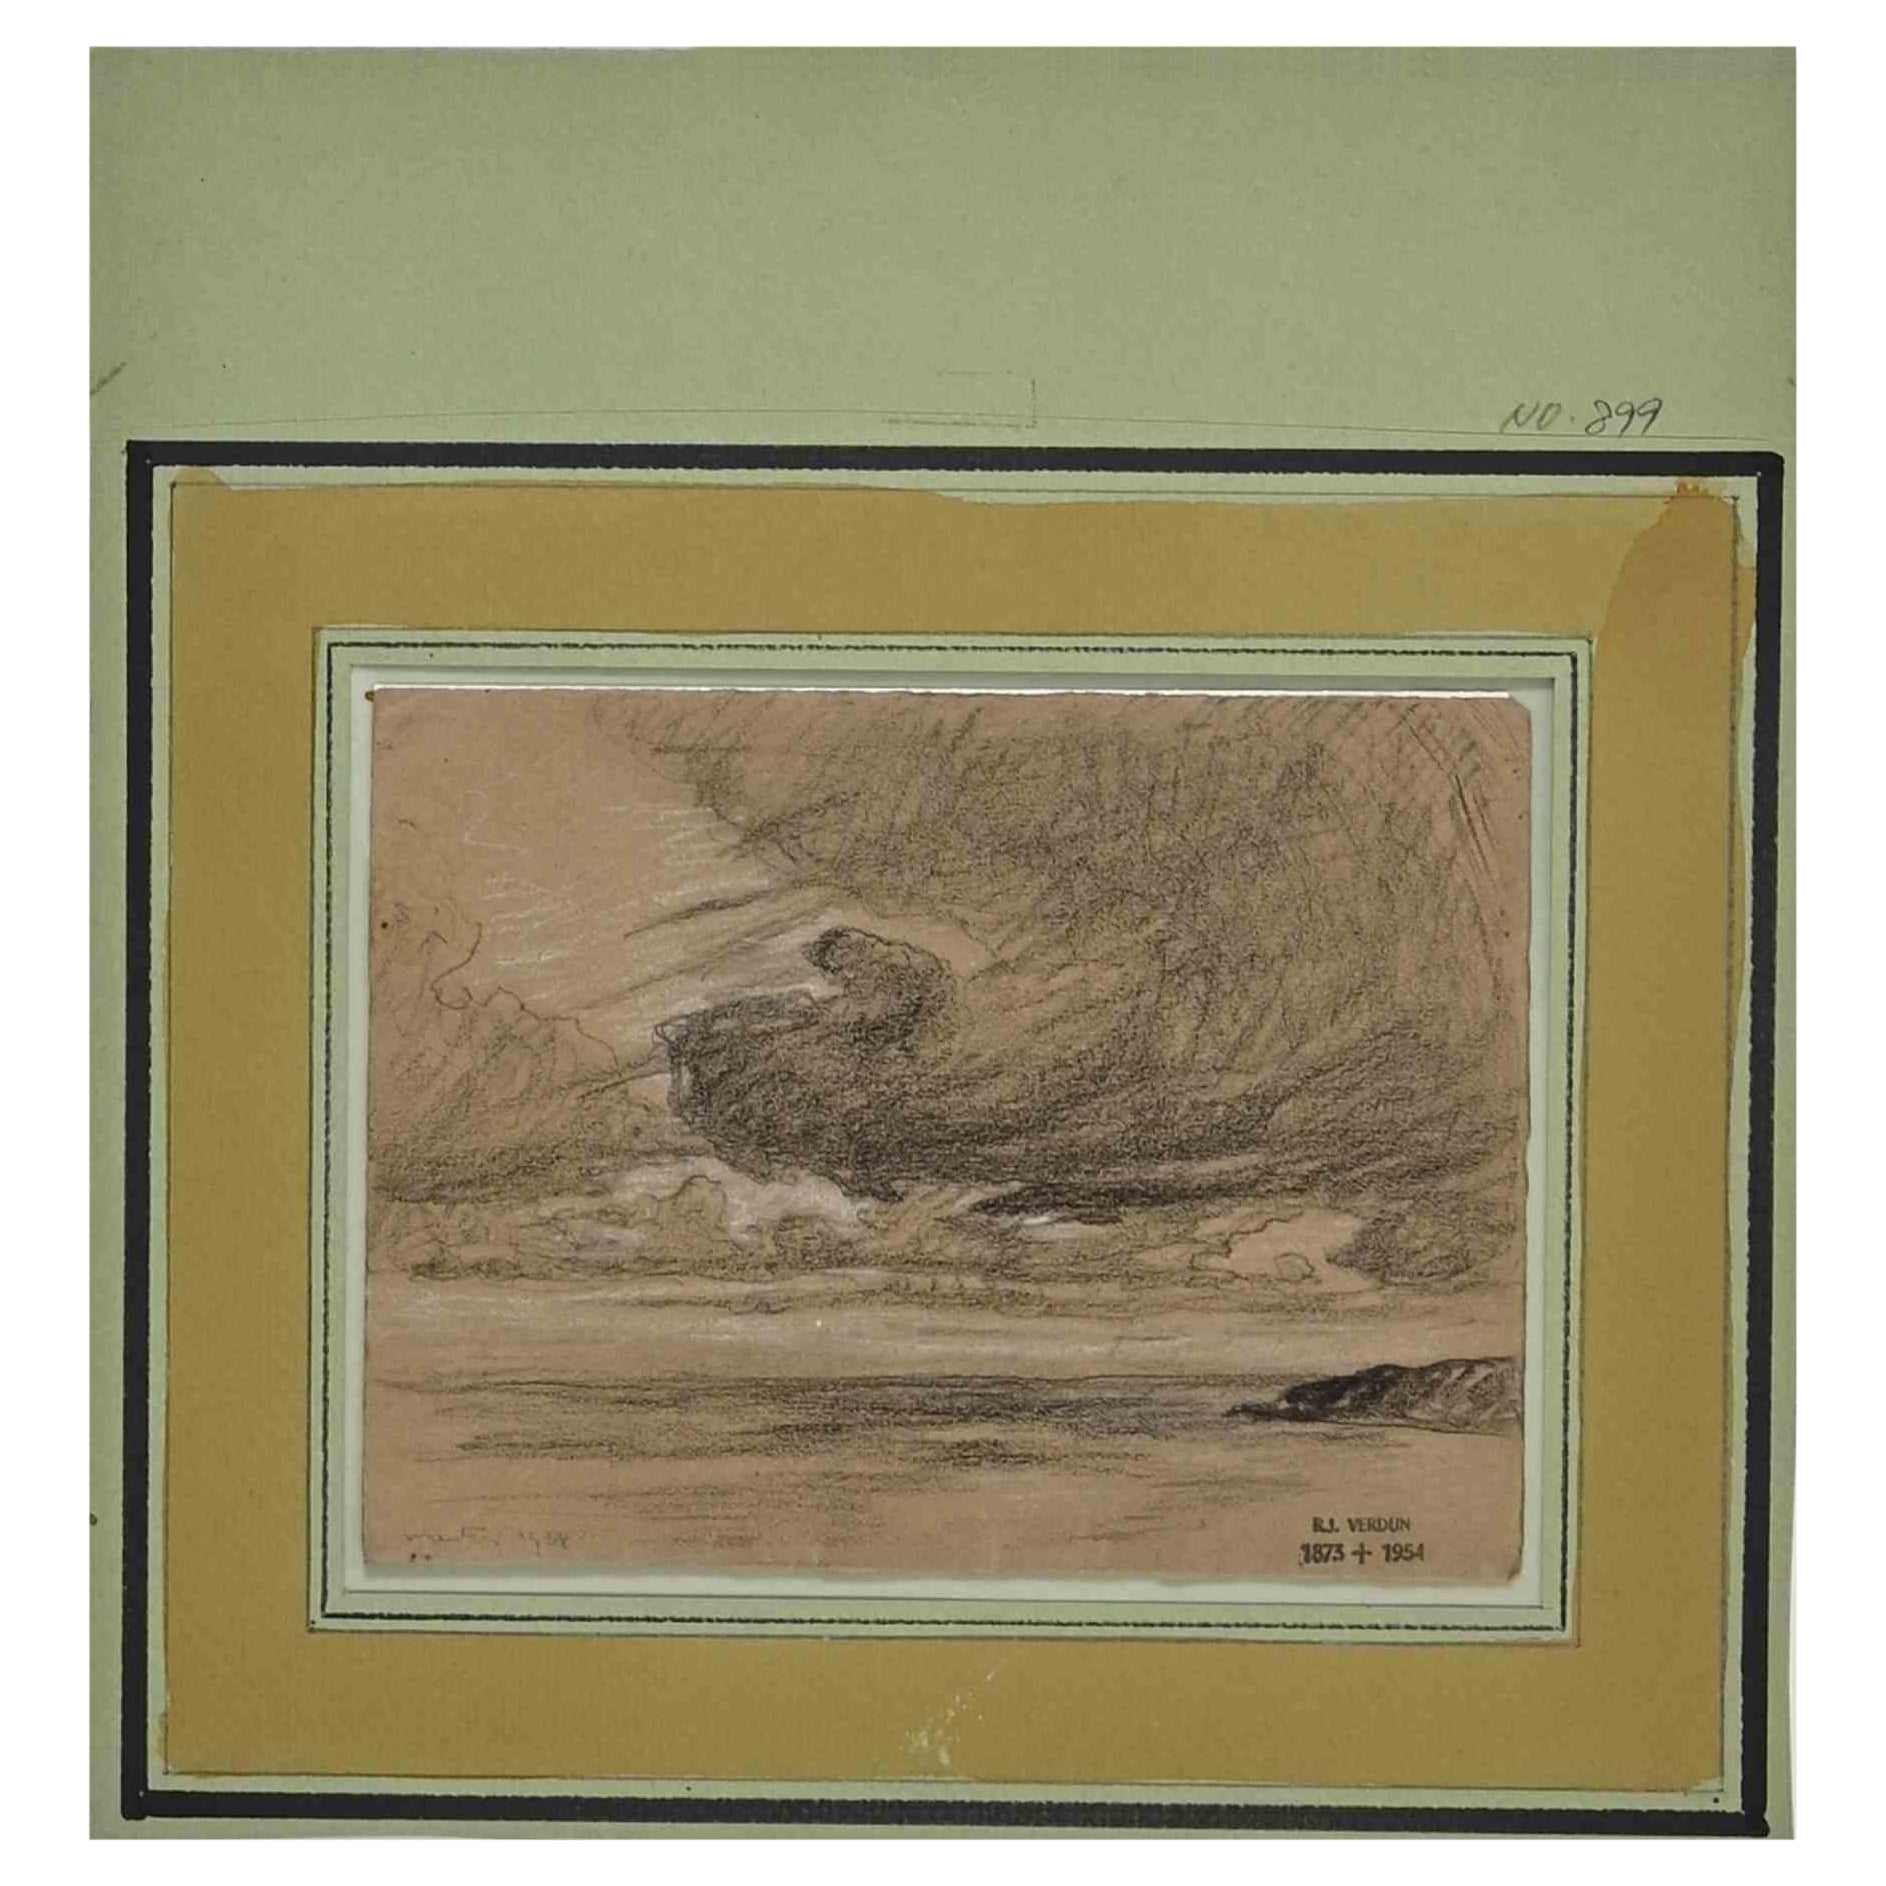 Cloudy ist eine Original-Bleistiftzeichnung von Raymond Jean Verdun (1873 - 1954) aus dem Jahr 1908.

Vom Künstler handsigniert und datiert.

Guter Zustand.

Raymond Jean Verdun wurde 1873 in Nogent-le-Rotrou geboren und war ein Schüler von Henri